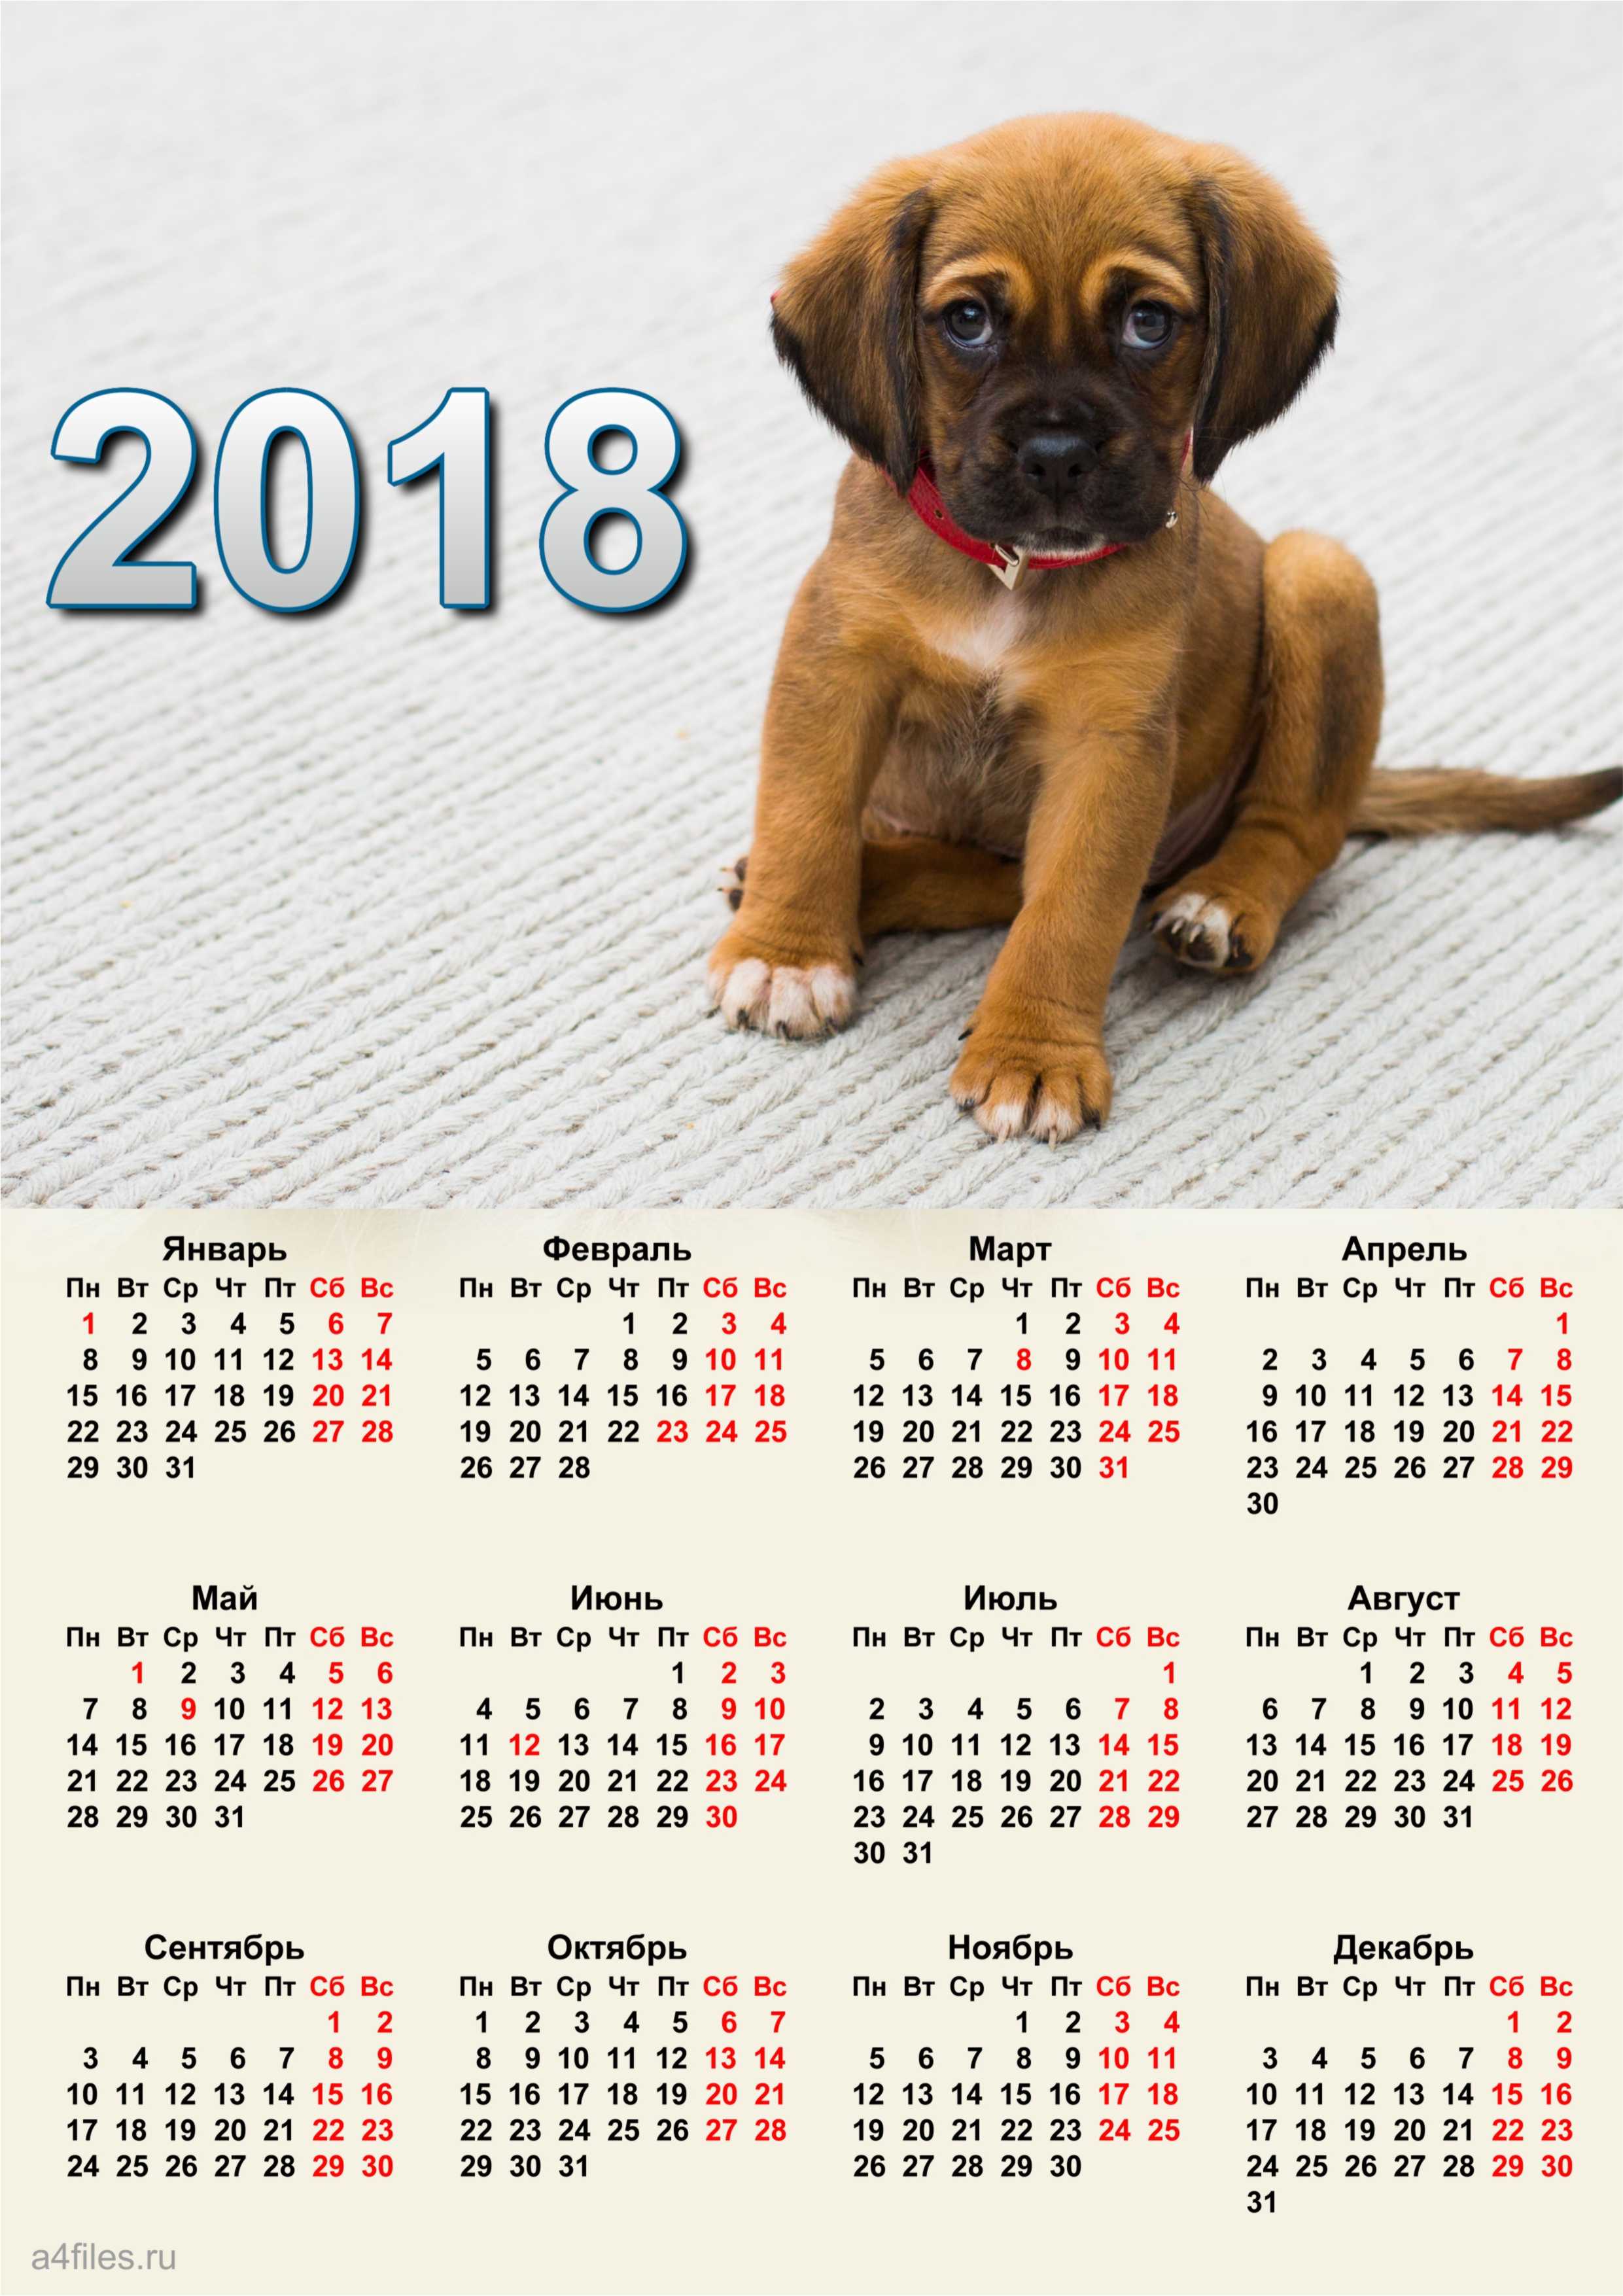 4 декабрь 2018 года. Календарь 2018 года по месяцам. Календарь 2018г.по месяцам. Календарик 2018. 2018 Год календарь год.